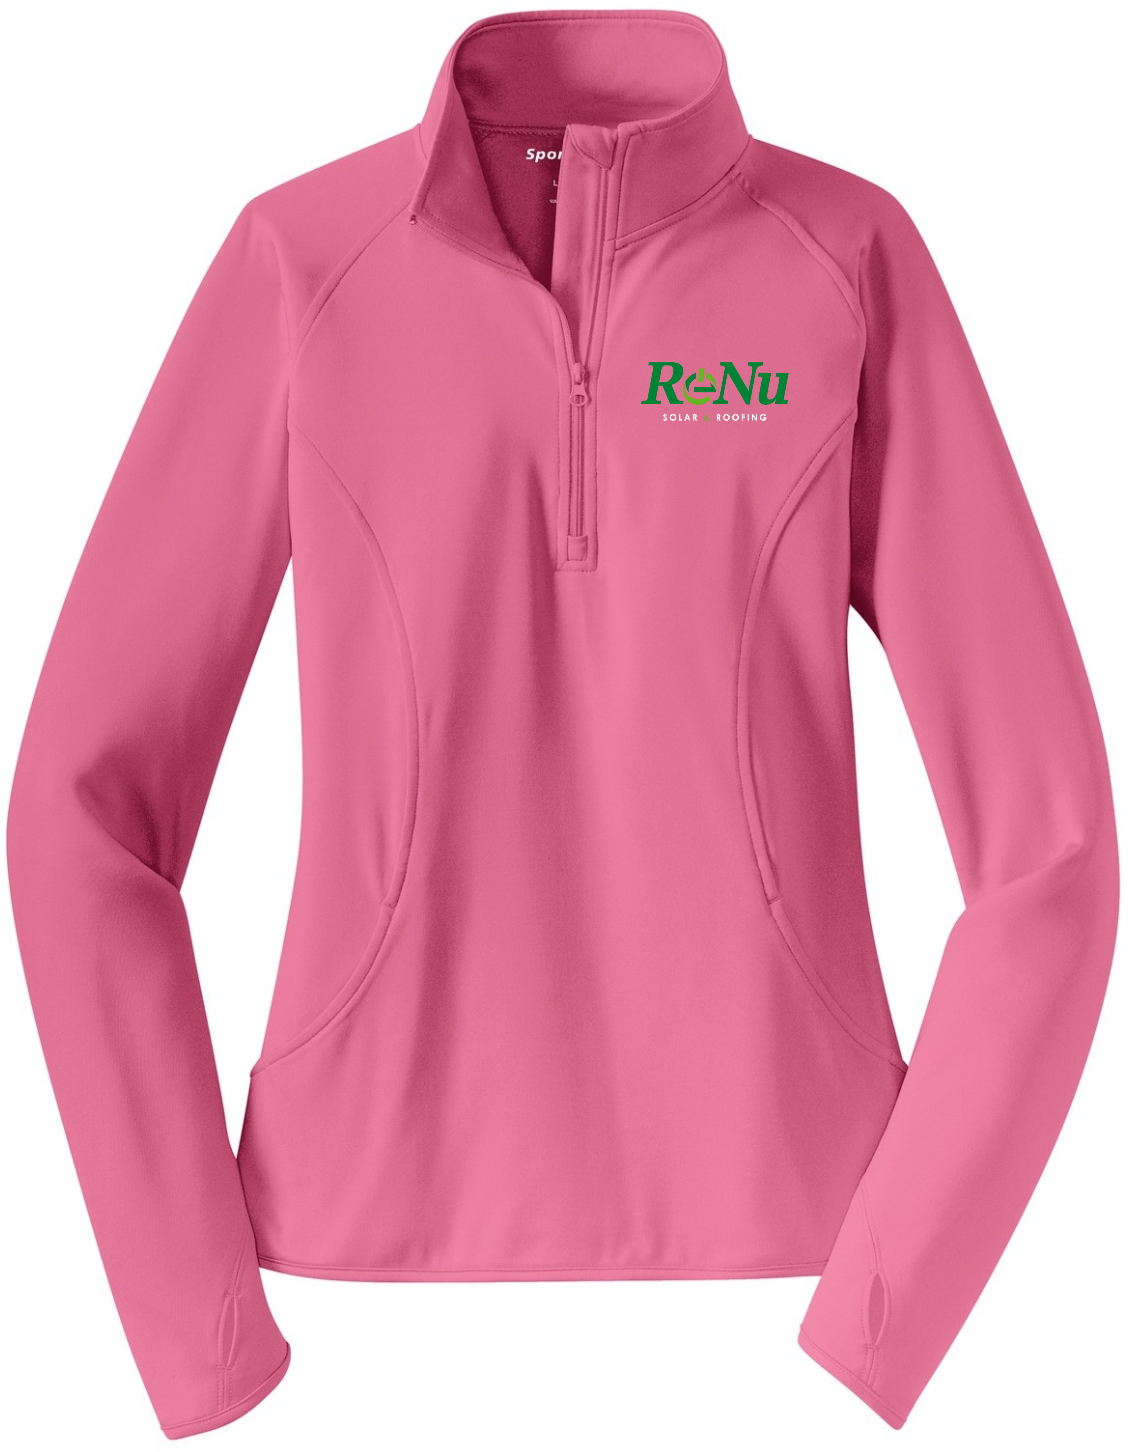 RENU Ladies Performance Half-Zip Pullover